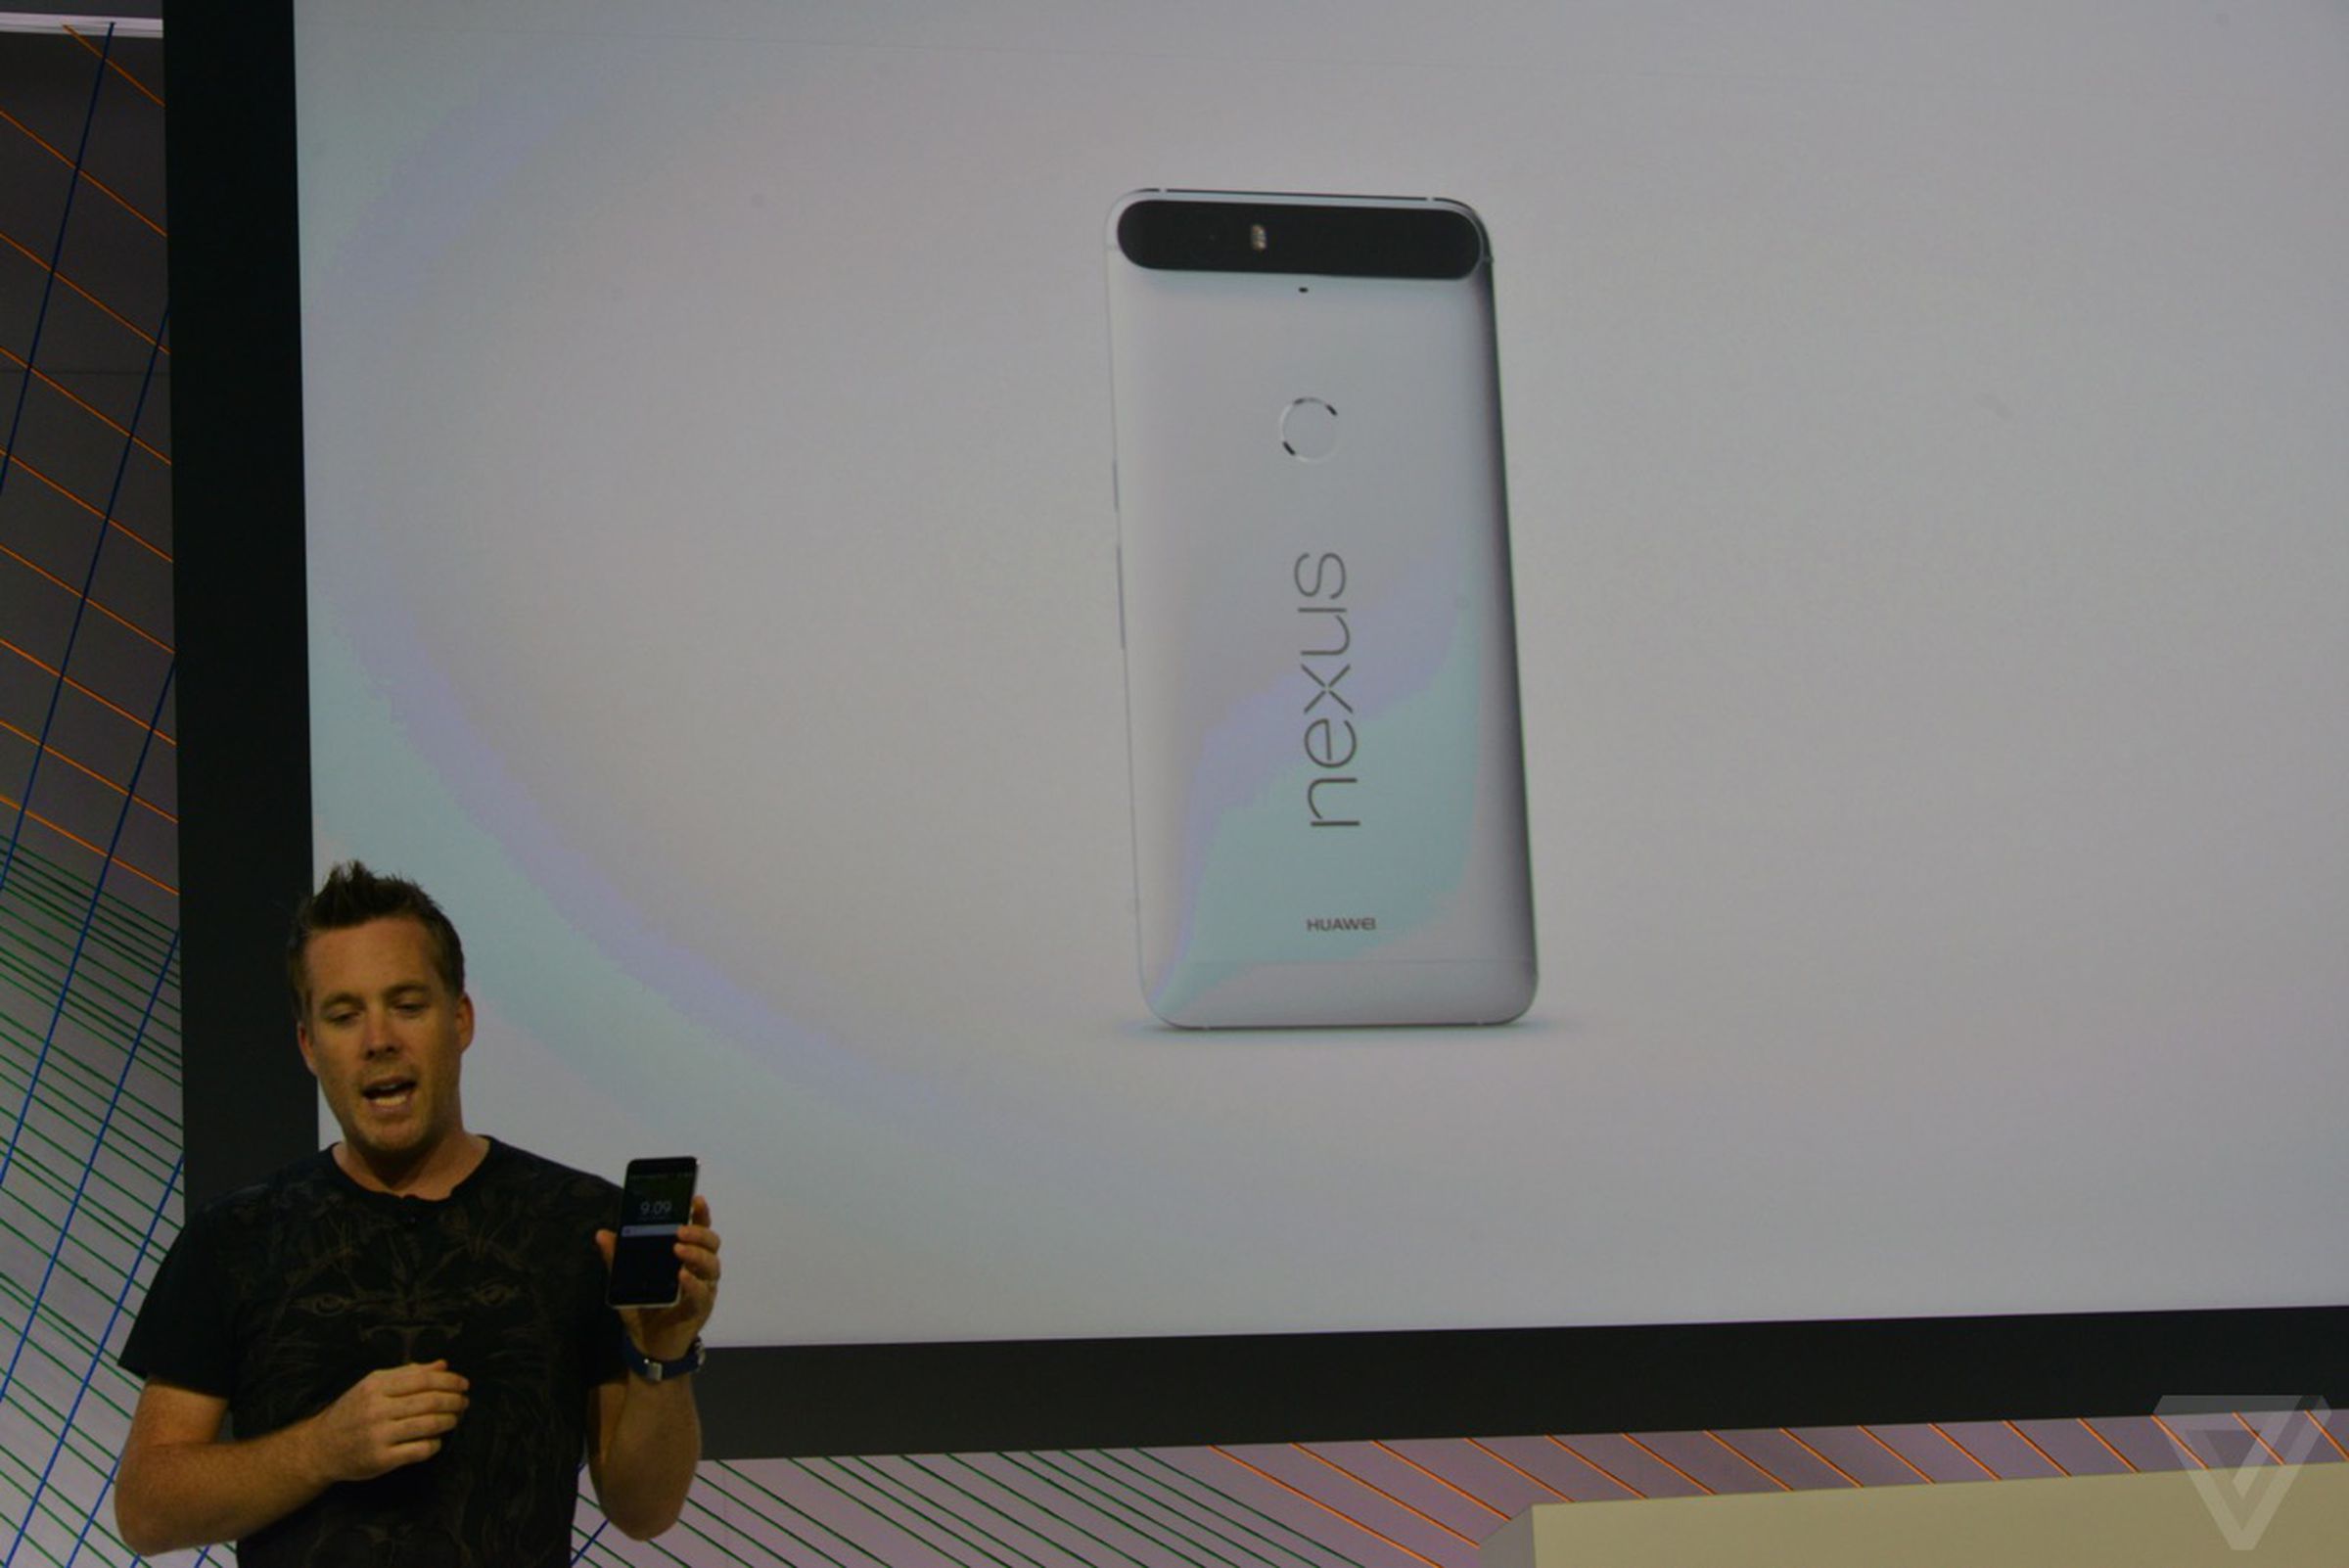 Nexus 6P in photos